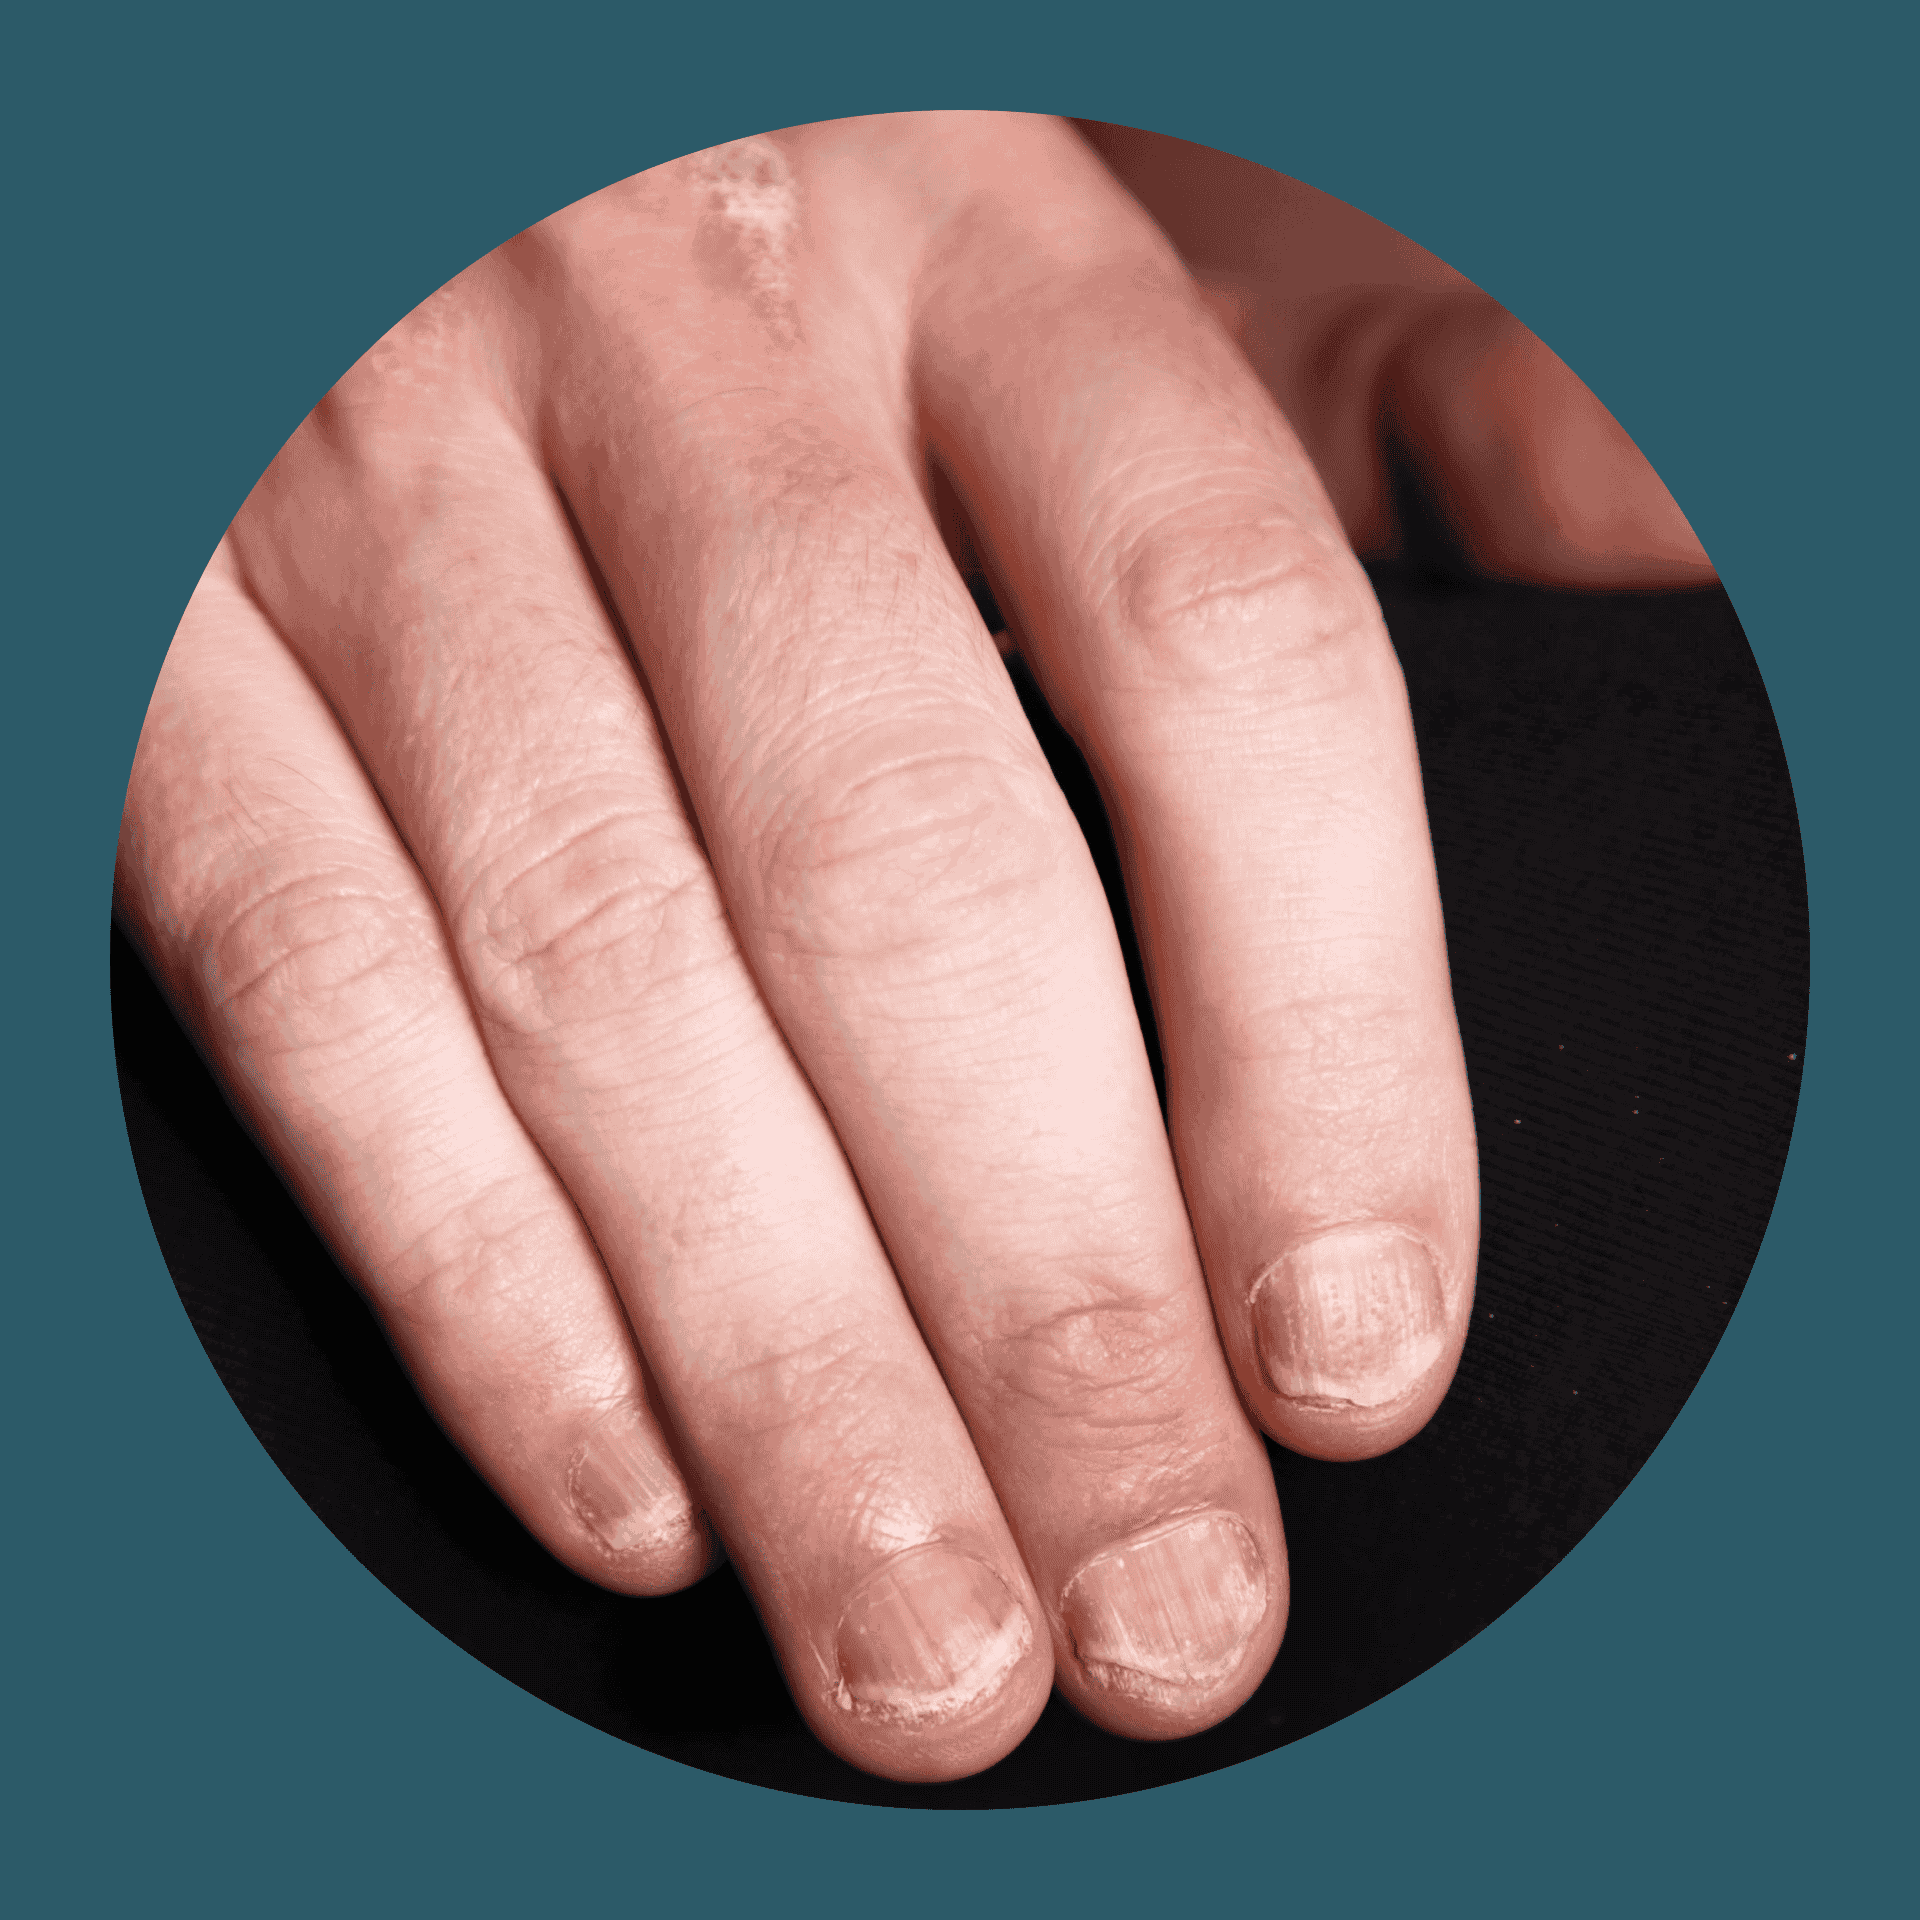 Hand einer Person, die von Nagel-Psoriasis betroffen ist und beschädigte Fingernägel hat